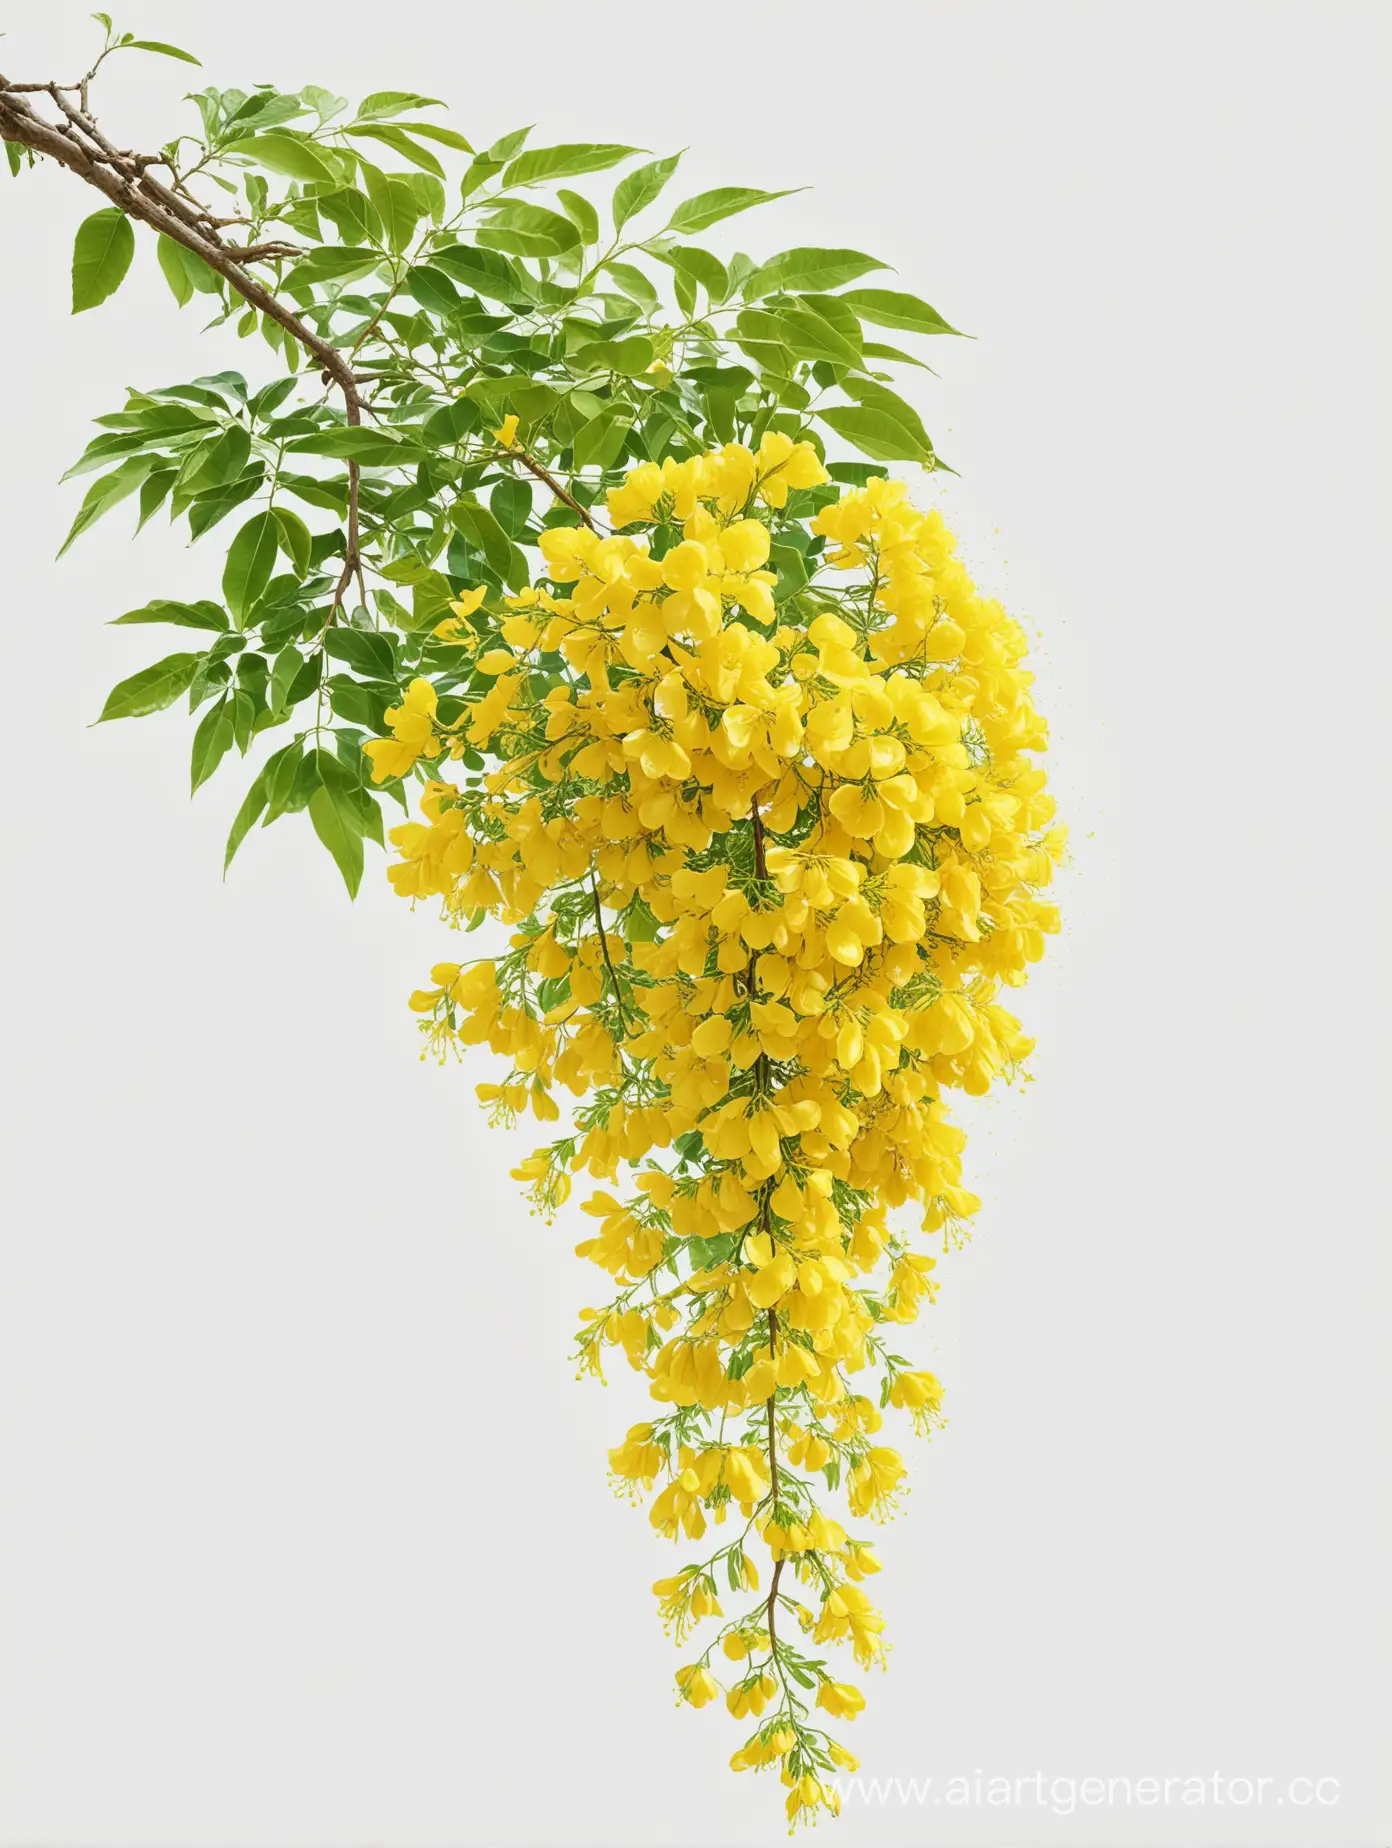 Vibrant-Yellow-Golden-Shower-Tree-Flower-on-White-Background-HD-Illustration